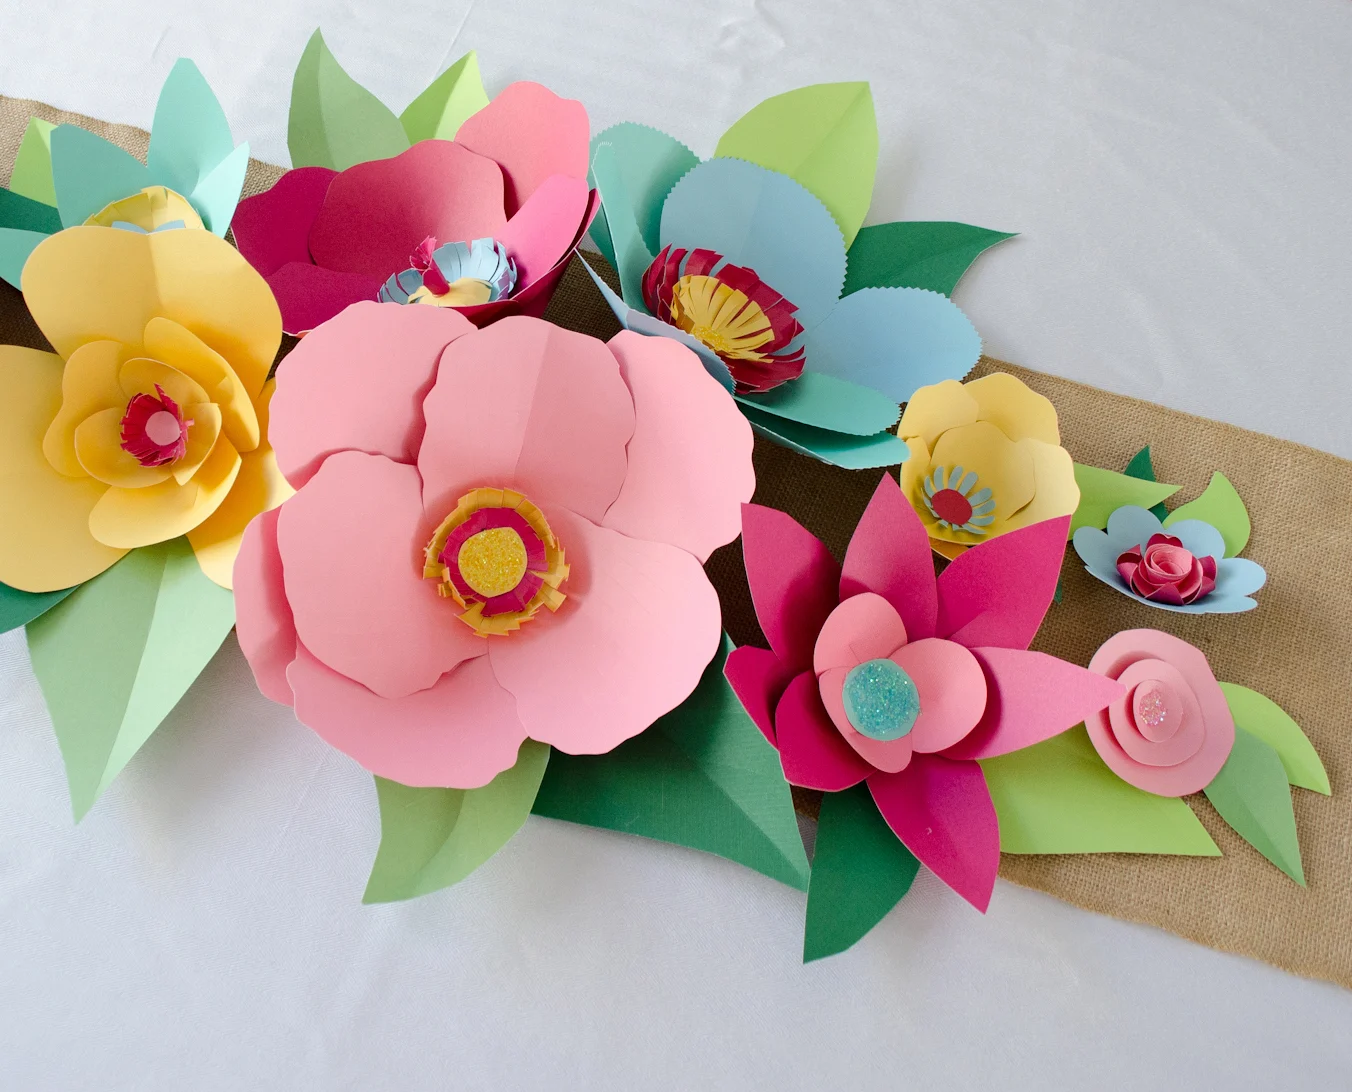 Hand Cut Paper Flowers - Project Nursery